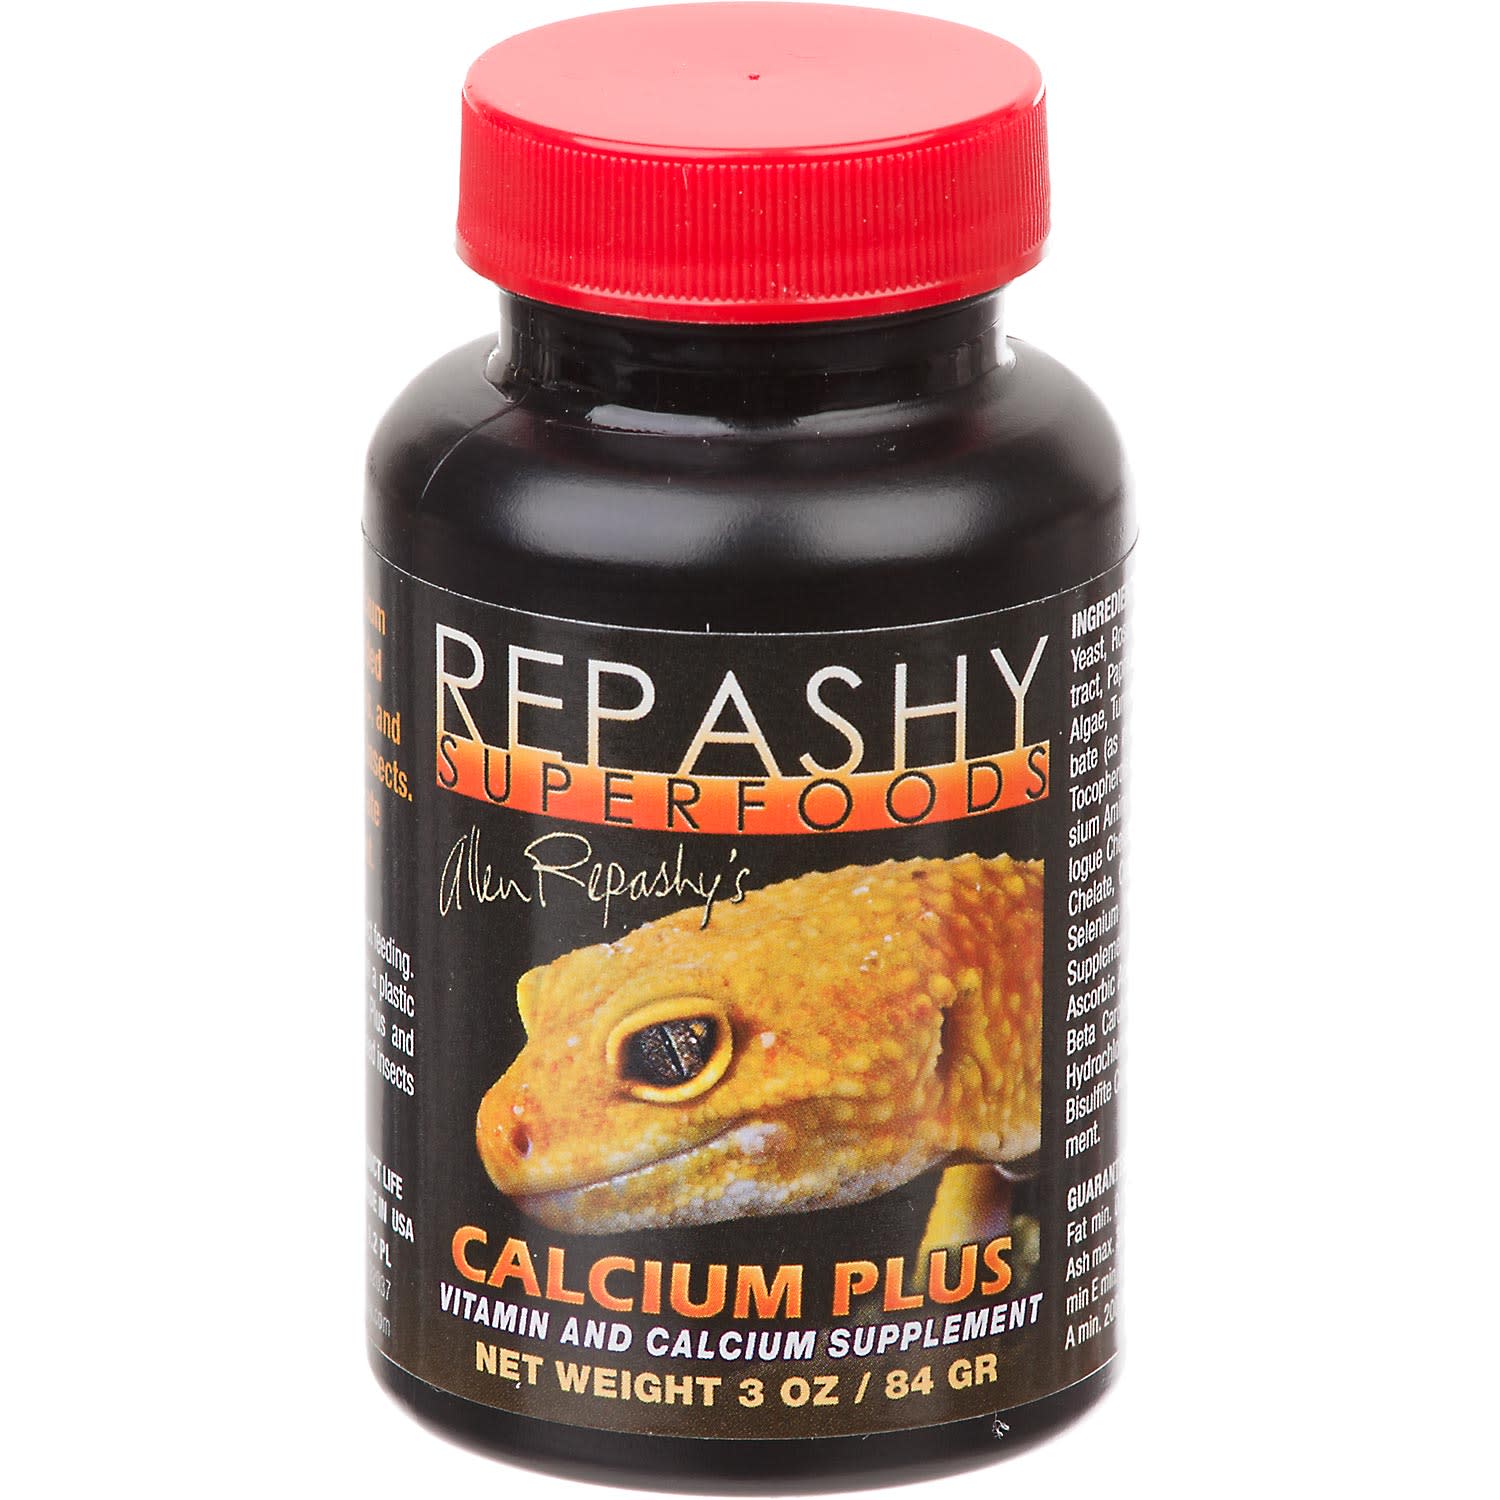 Repashy Super Foods Calcium Plus Supplement, 3 oz.